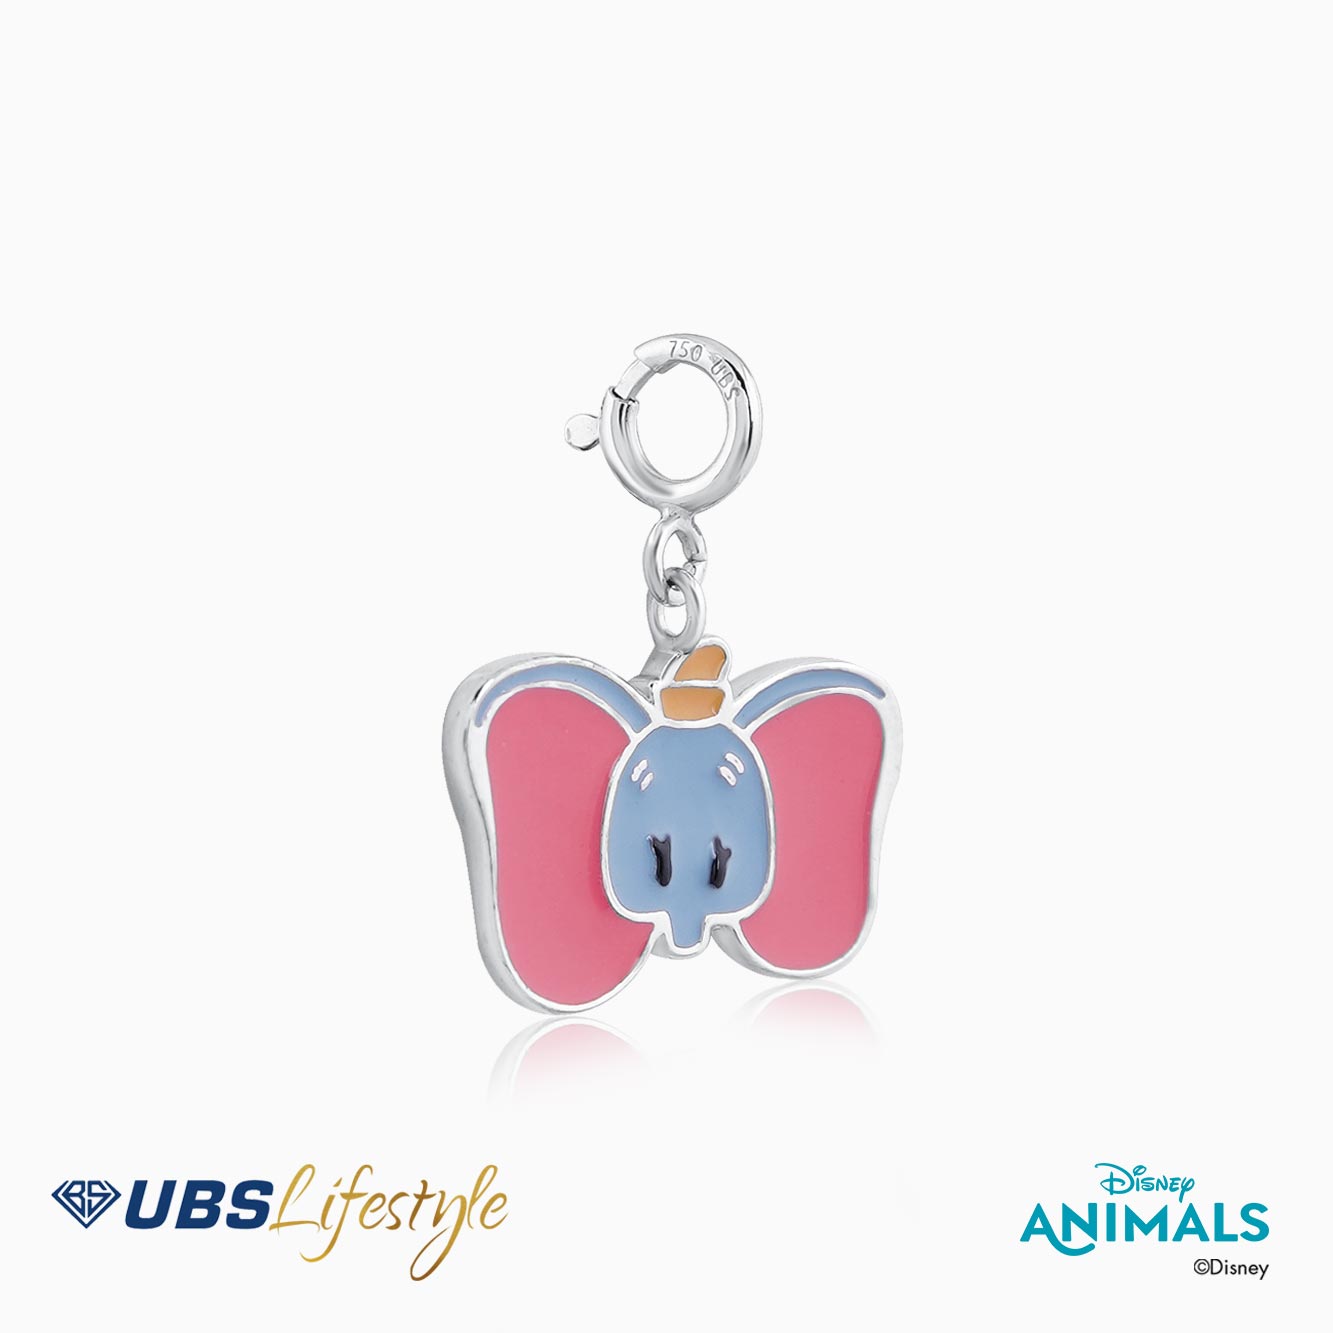 UBS Liontin Emas Disney Animals - Cmy0123W - 17K